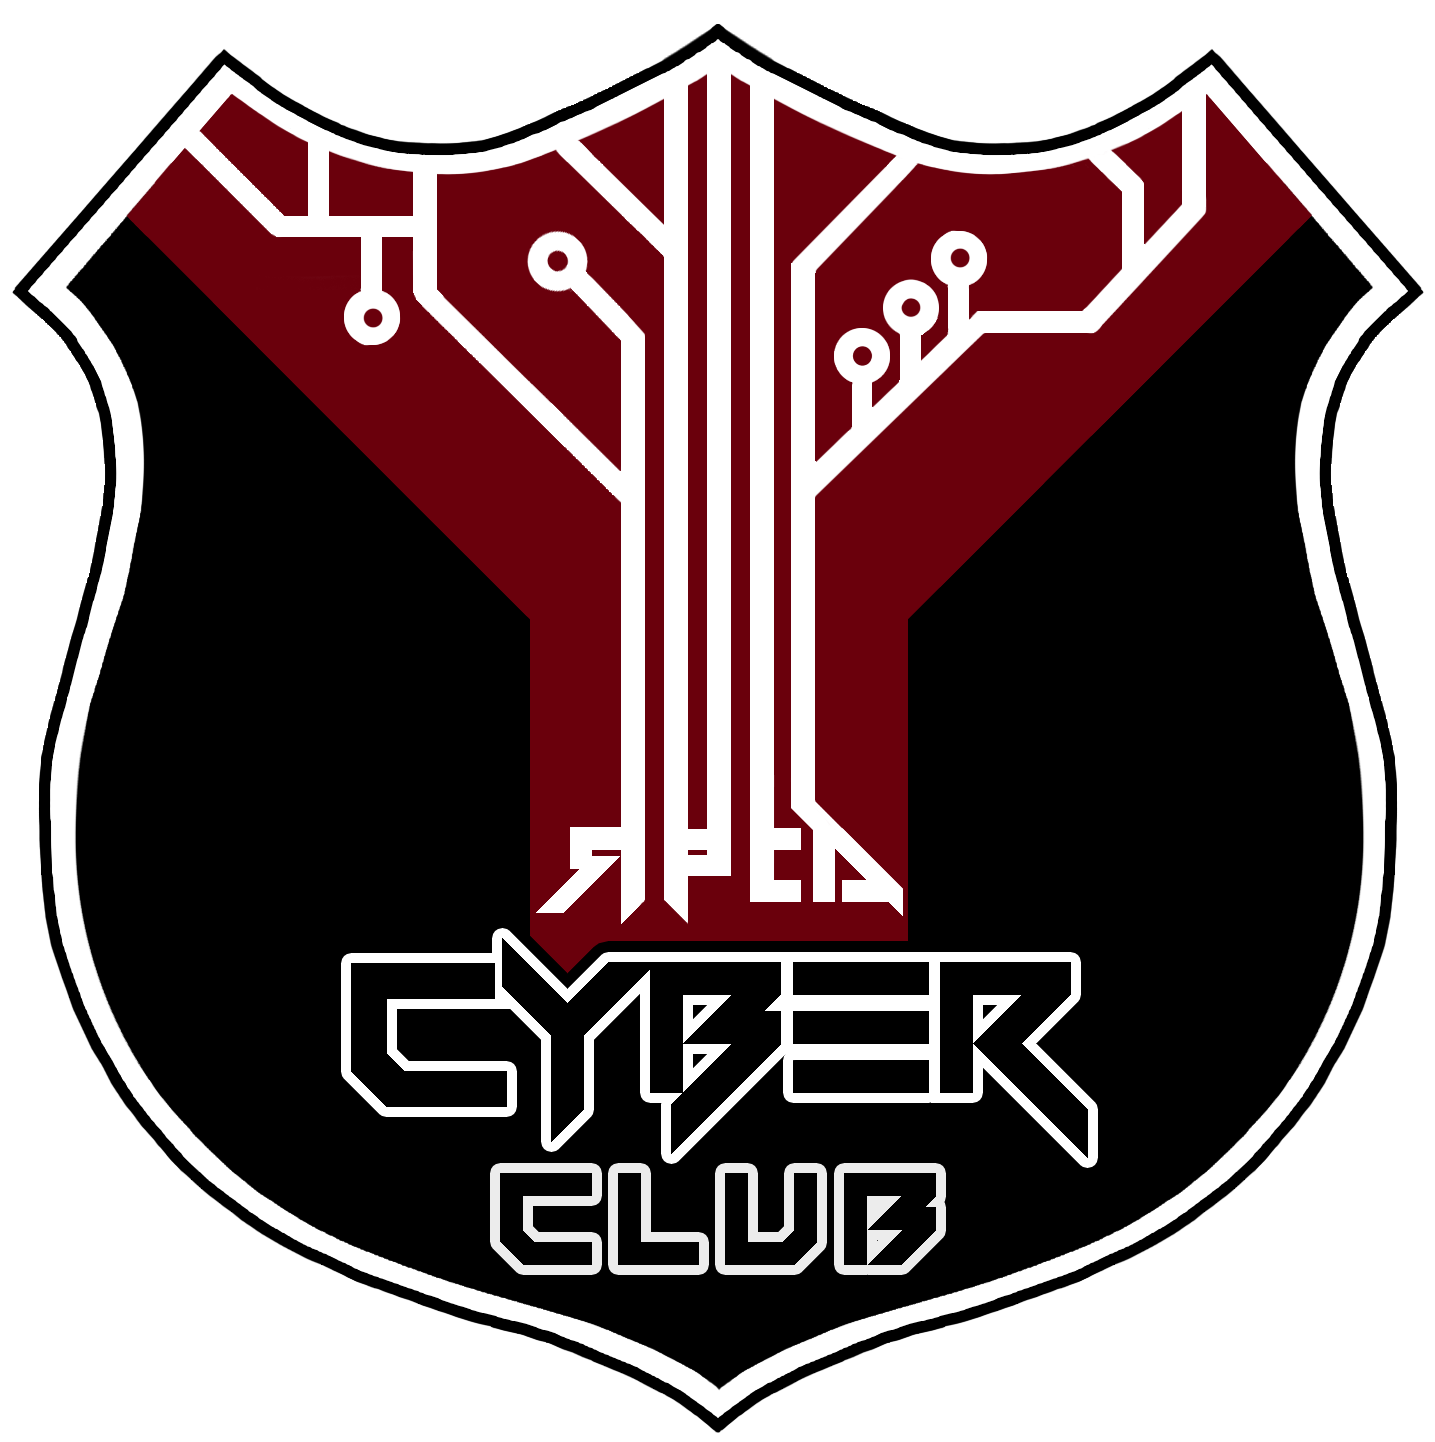  / RPCA Cyber Club